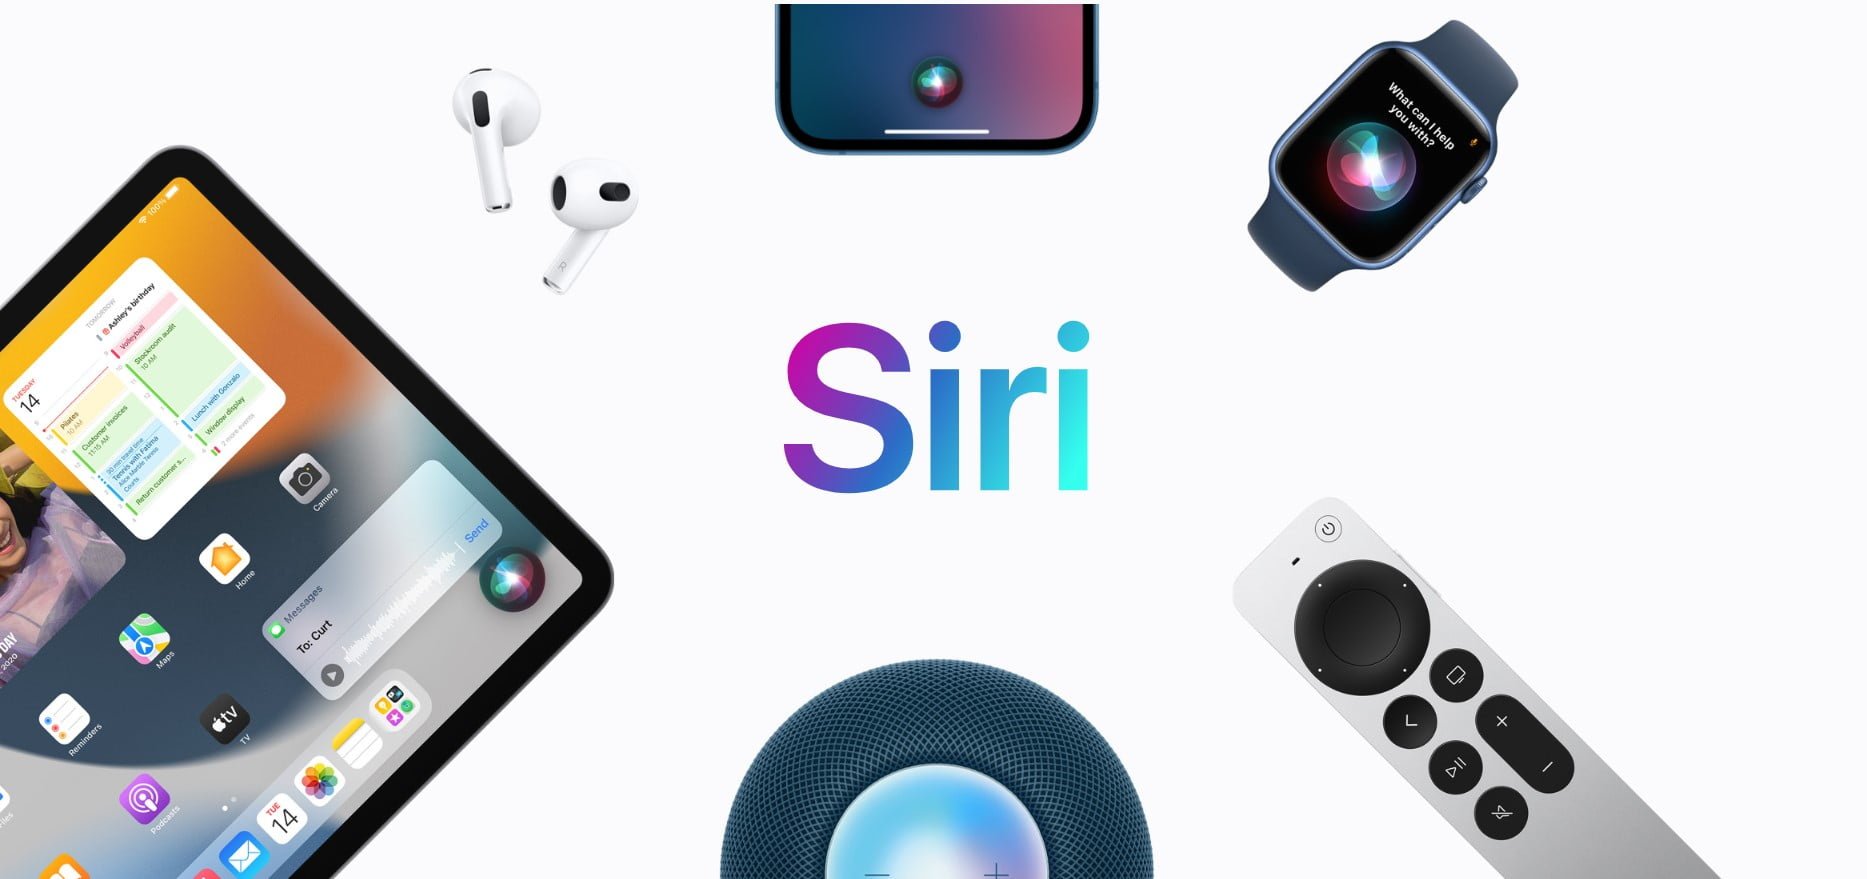 Reklama prezentująca różne produkty współpracujące z asystentem głosowym Siri, w tym iPad, AirPods, iPhone, Apple Watch, HomePod i pilot do Apple TV, z logo "Siri" na środku.